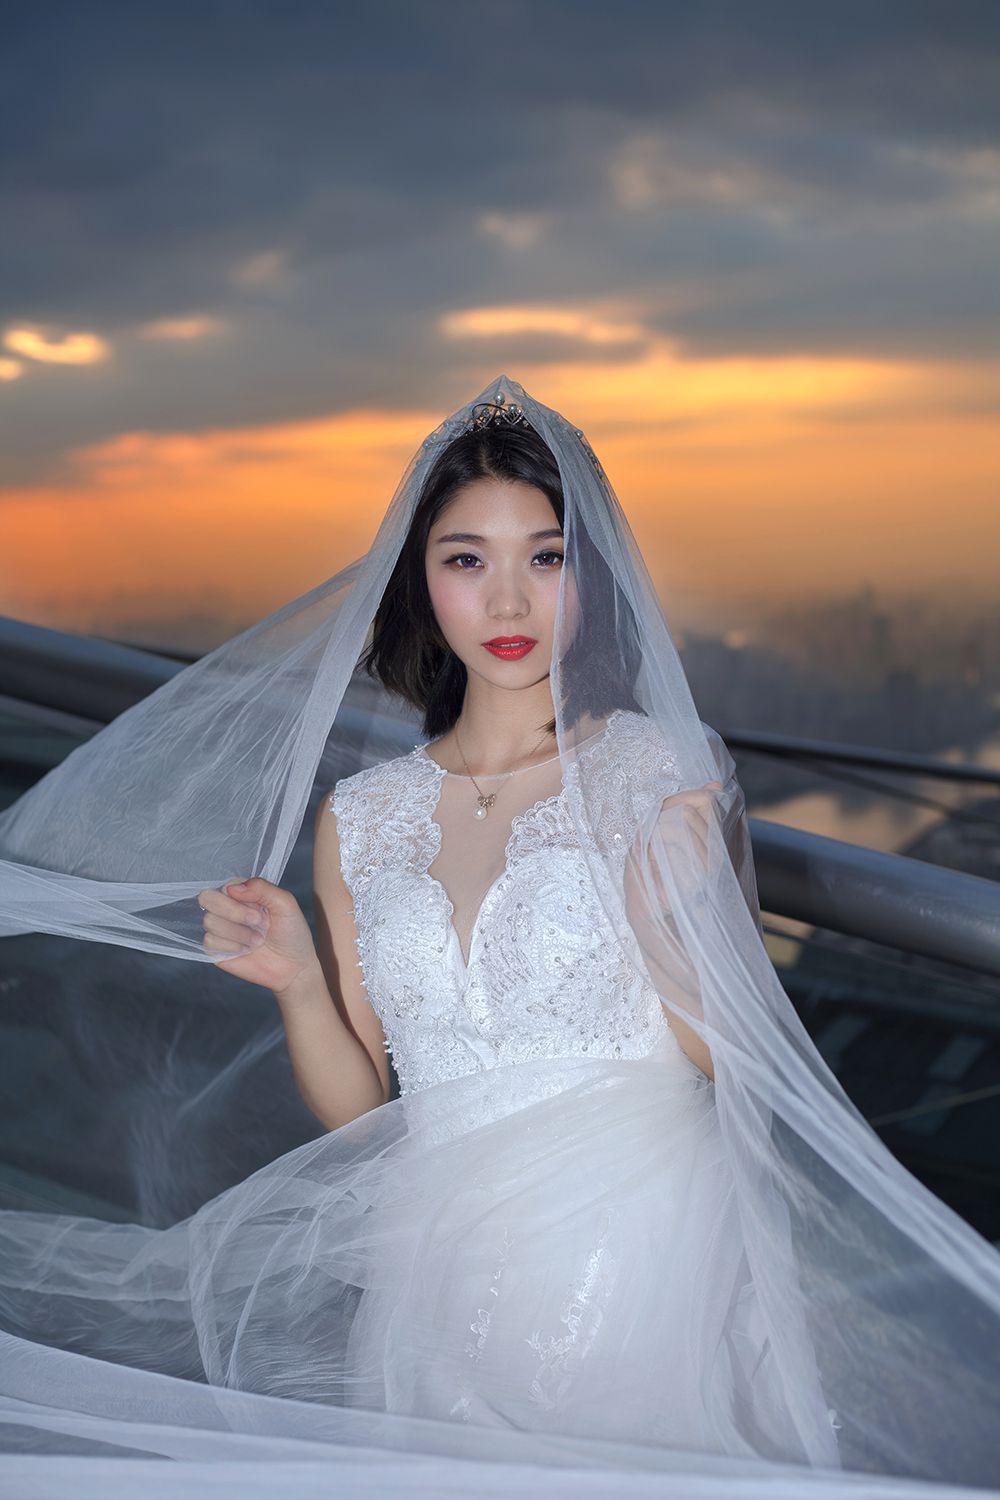 2017年8月广州婚纱照图片,广州婚纱照,婚纱照图片